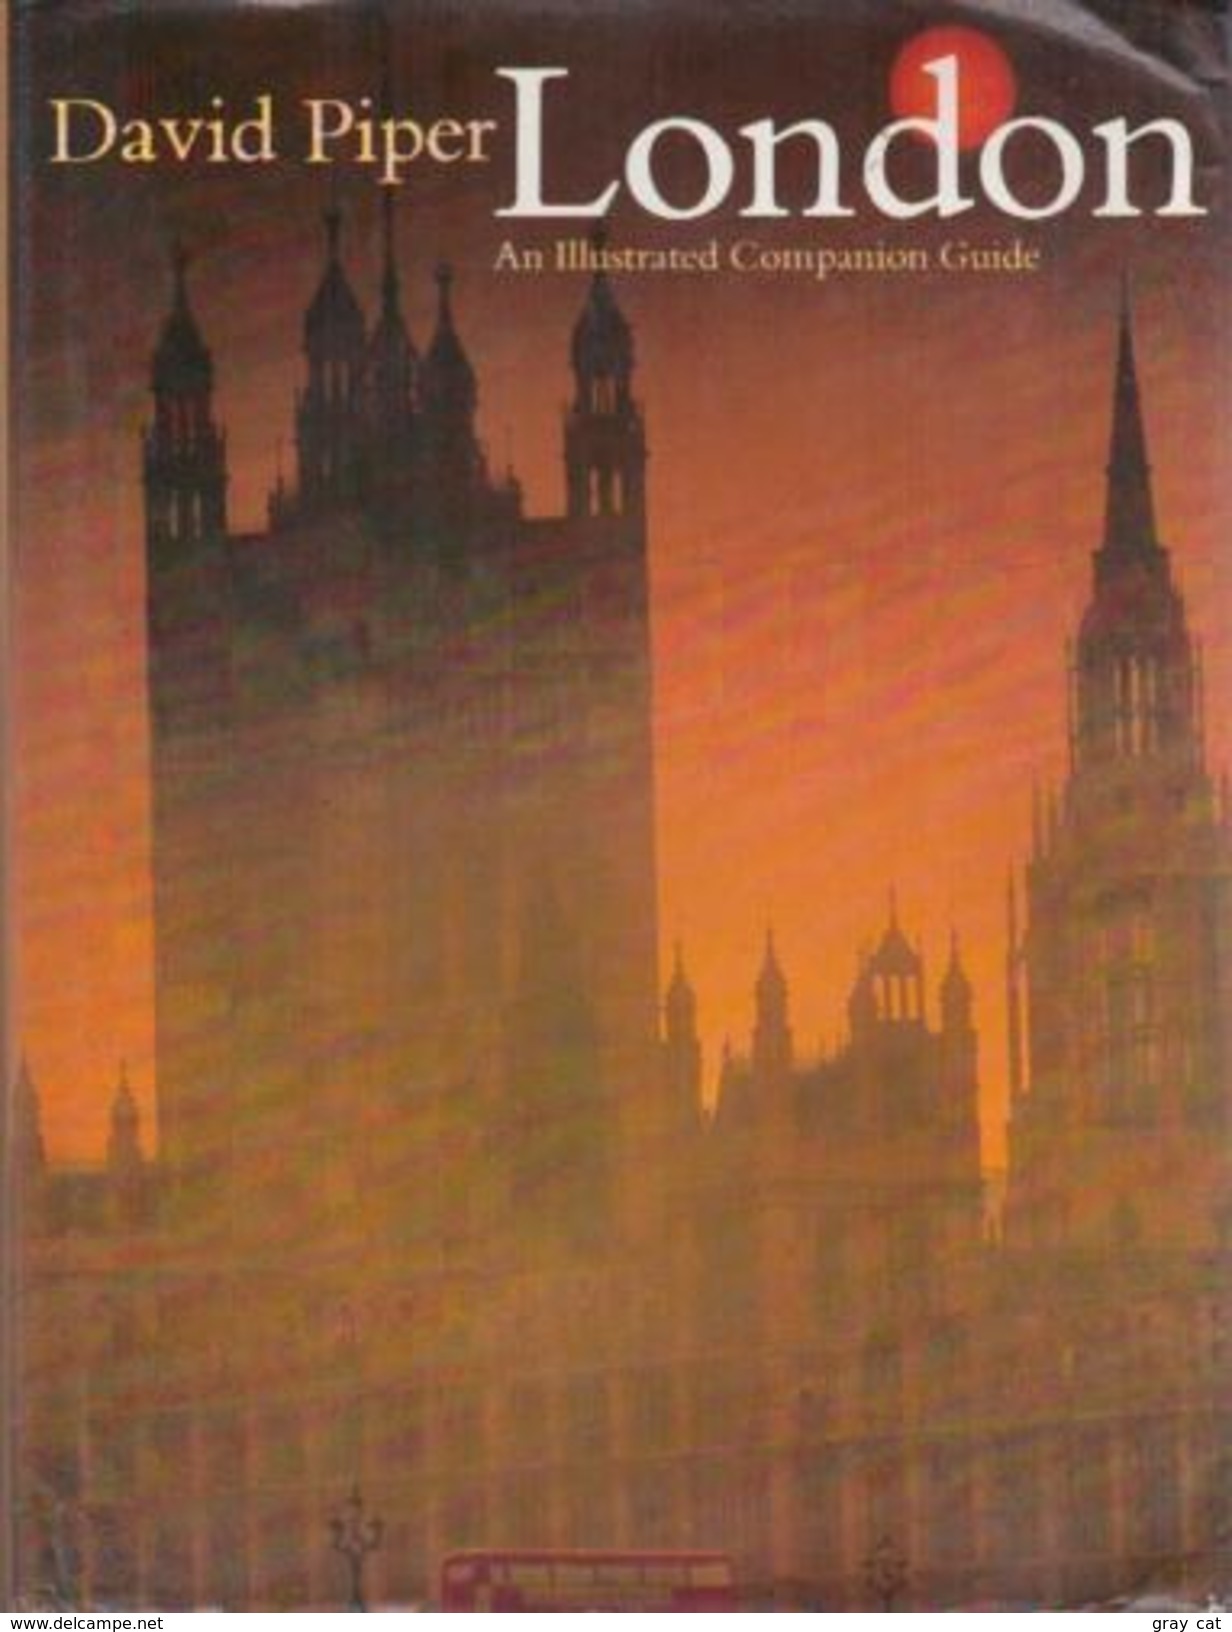 London An Illustrated Companion Guide By Piper, David (ISBN 9780002162876) - Viaggi/ Esplorazioni